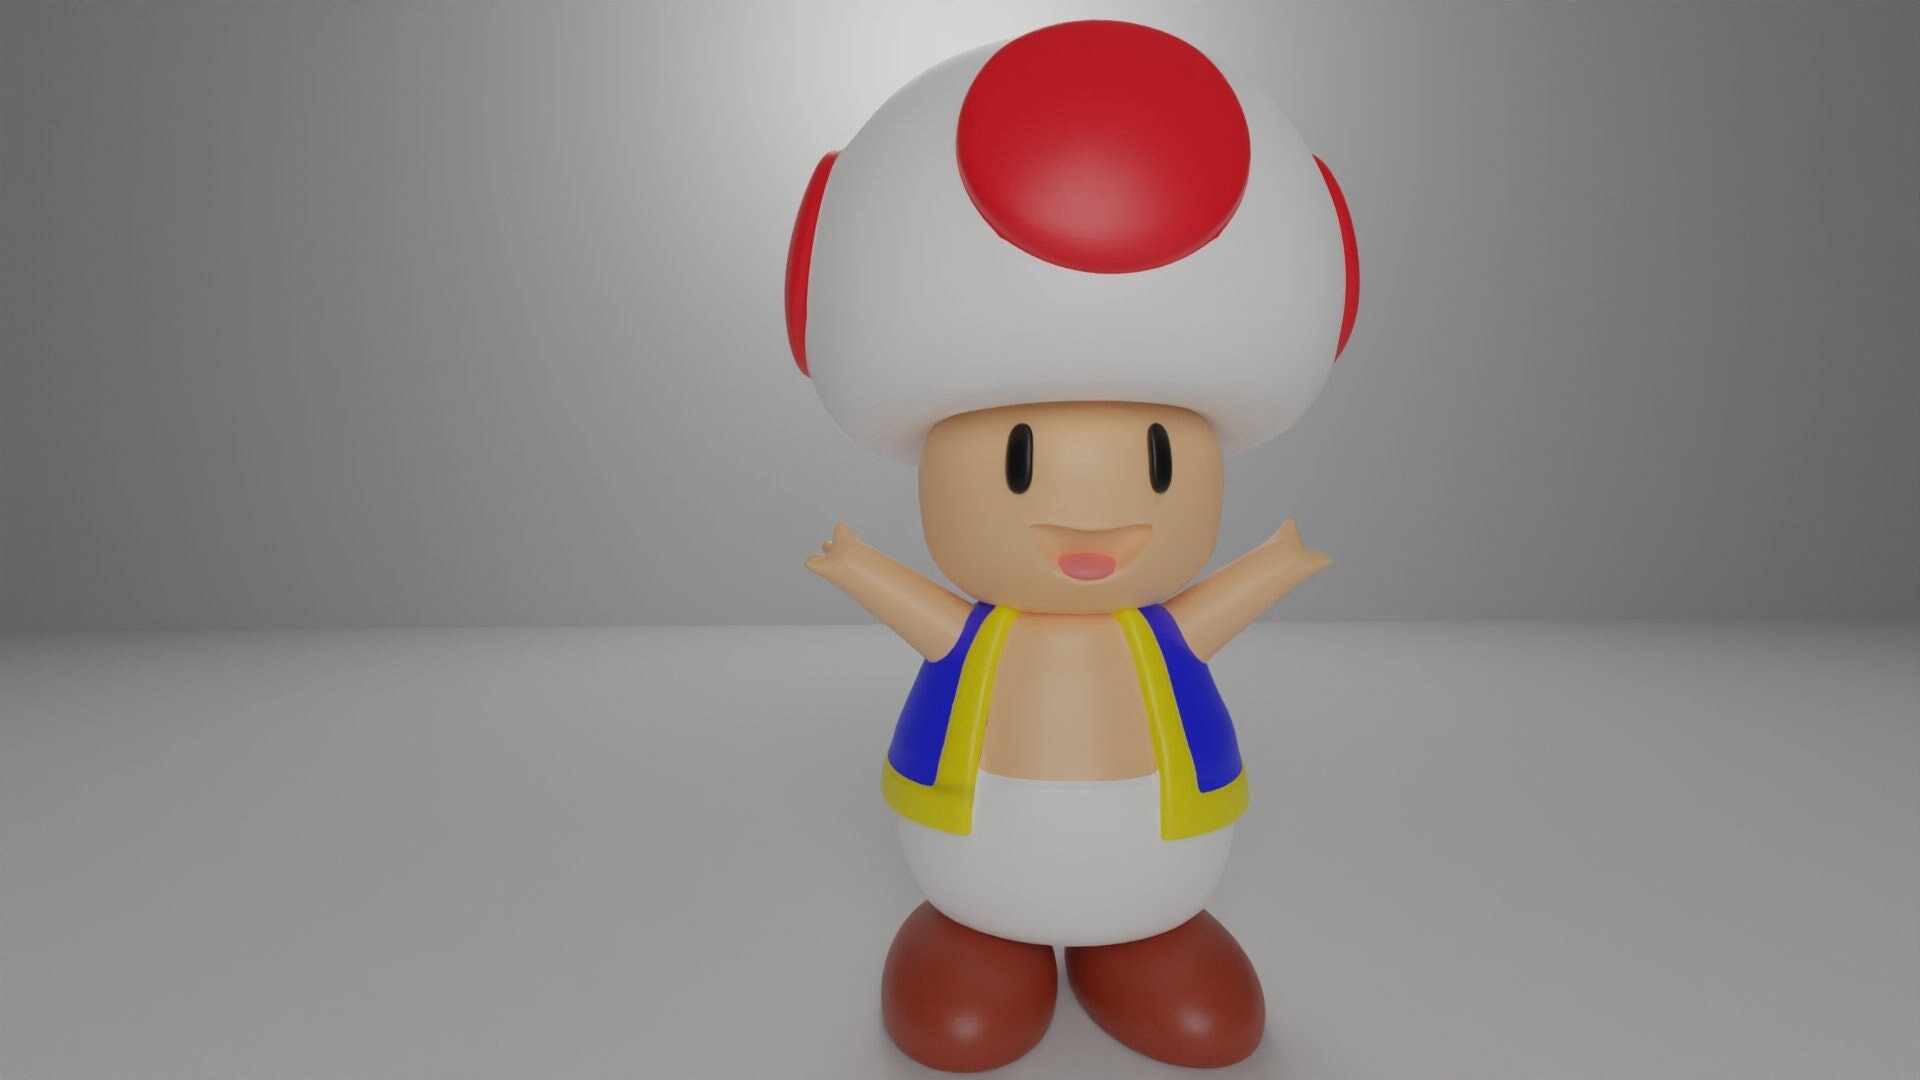 Peluche Toad XXL - Super Mario Nintendo - 90 cm